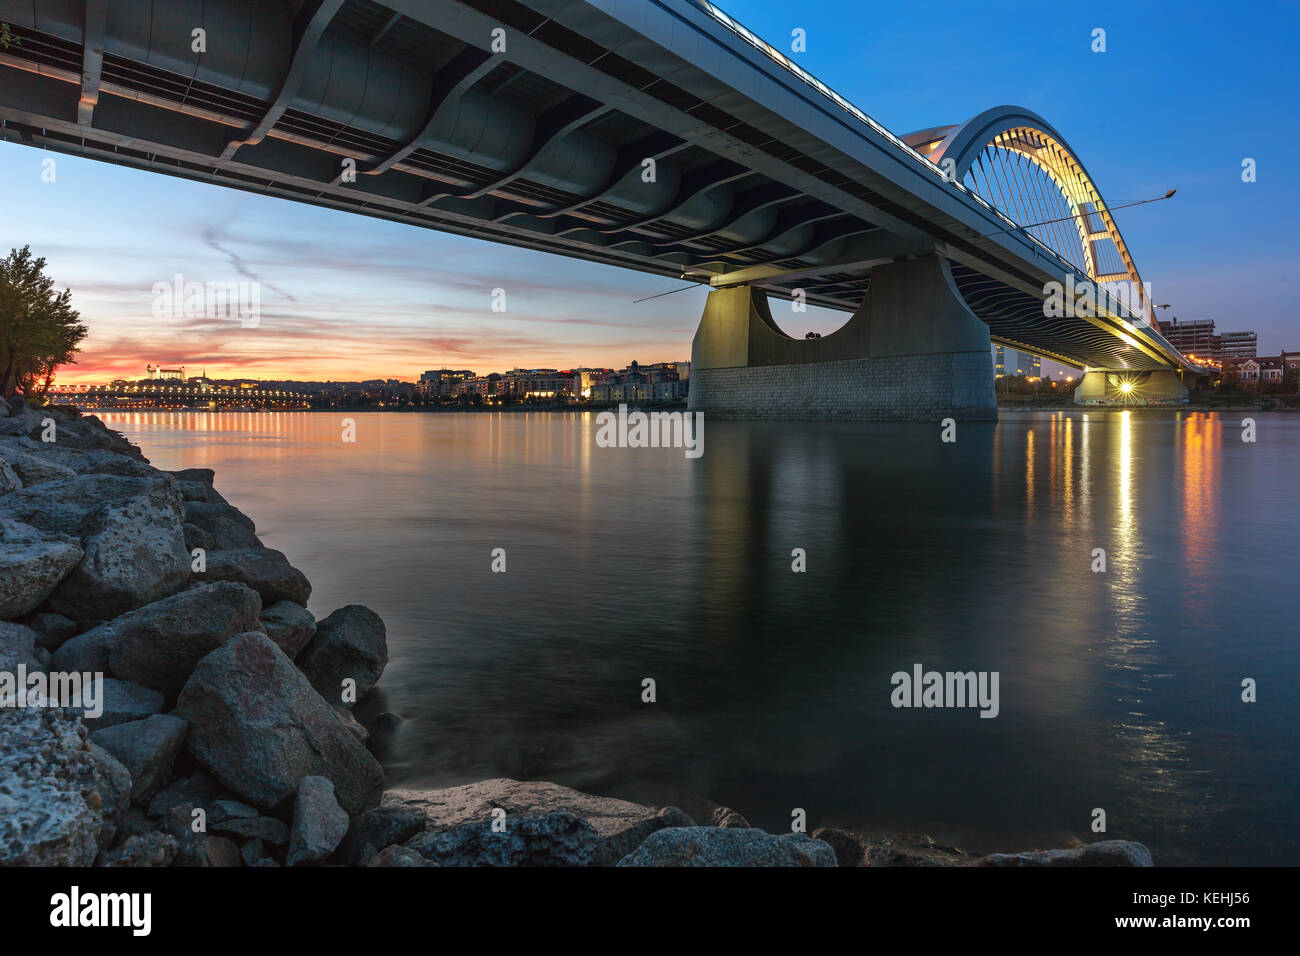 Autumn sunset at Apollo bridge over Danube, Bratislava, Slovakia Stock Photo